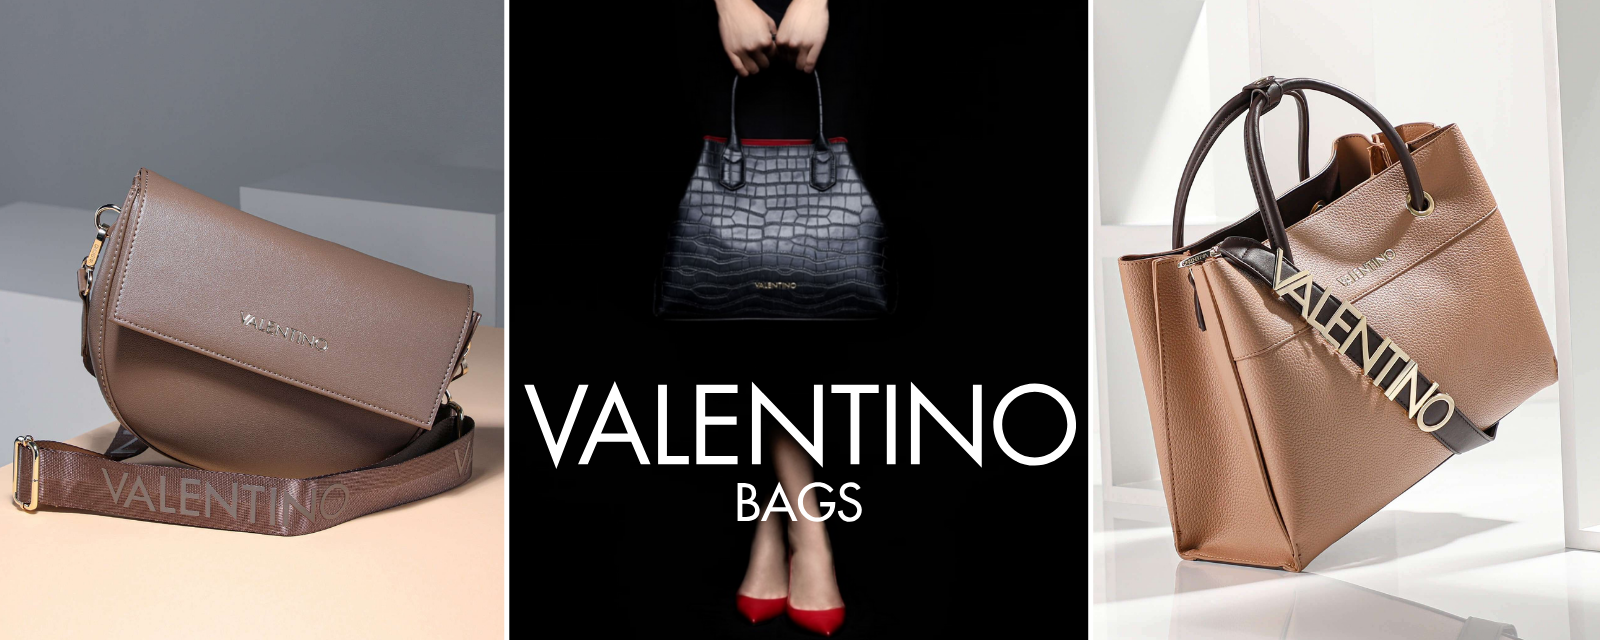 nuova collezione borse valentino bags borse per la donna